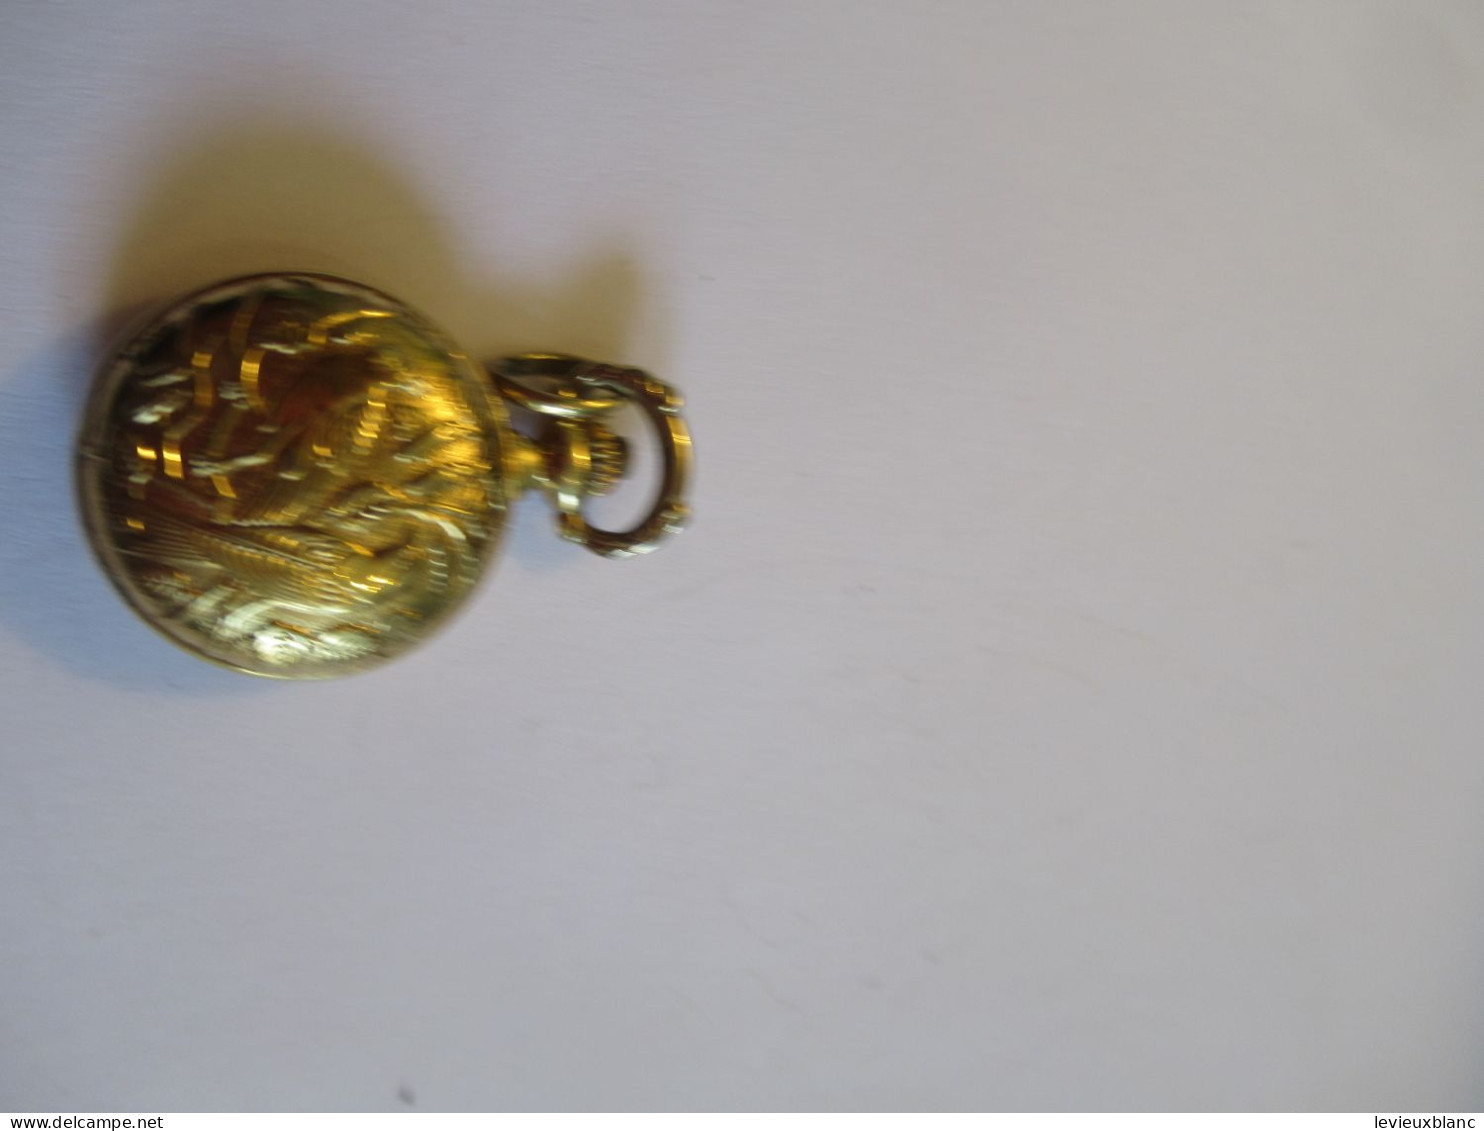 mini-Gousset pour femme/avec accroche pour chainette/ CHILEX Paris/ Bronze doré /Seconde moitié du XXéme          BIJ166